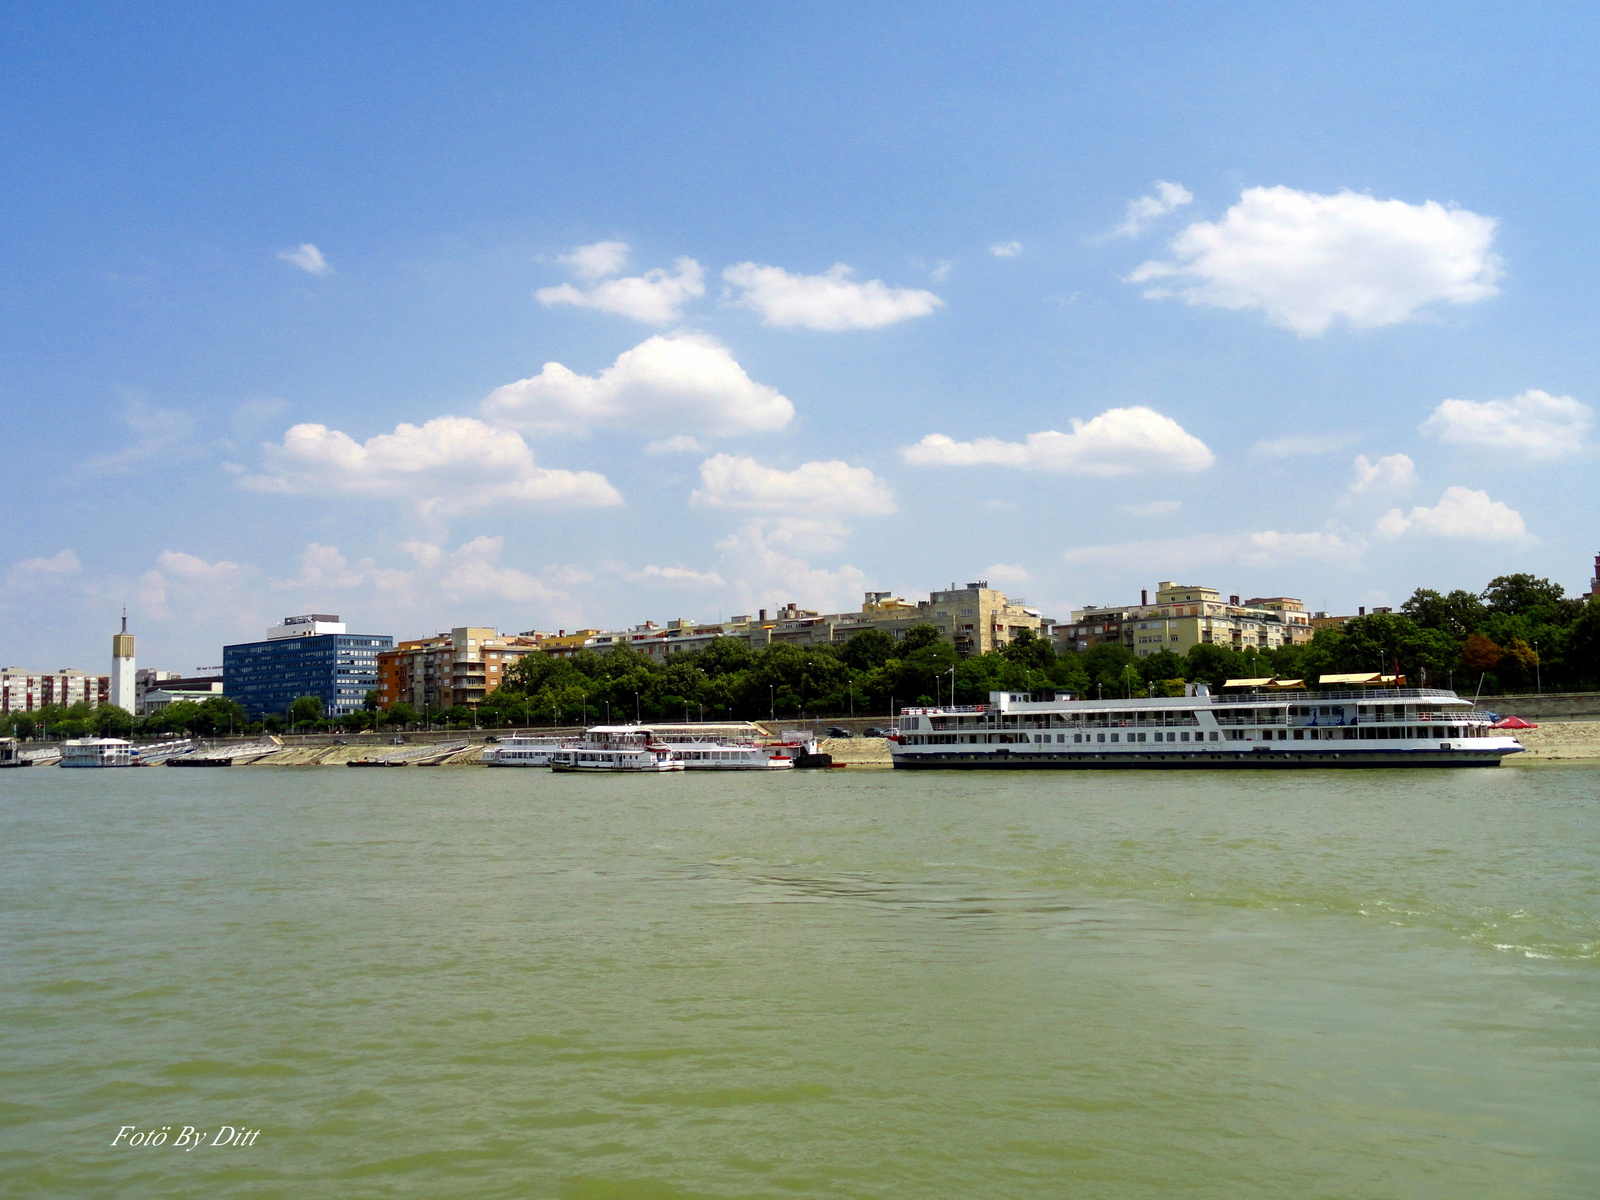 Duna-Felhők-napsütés...nyár,